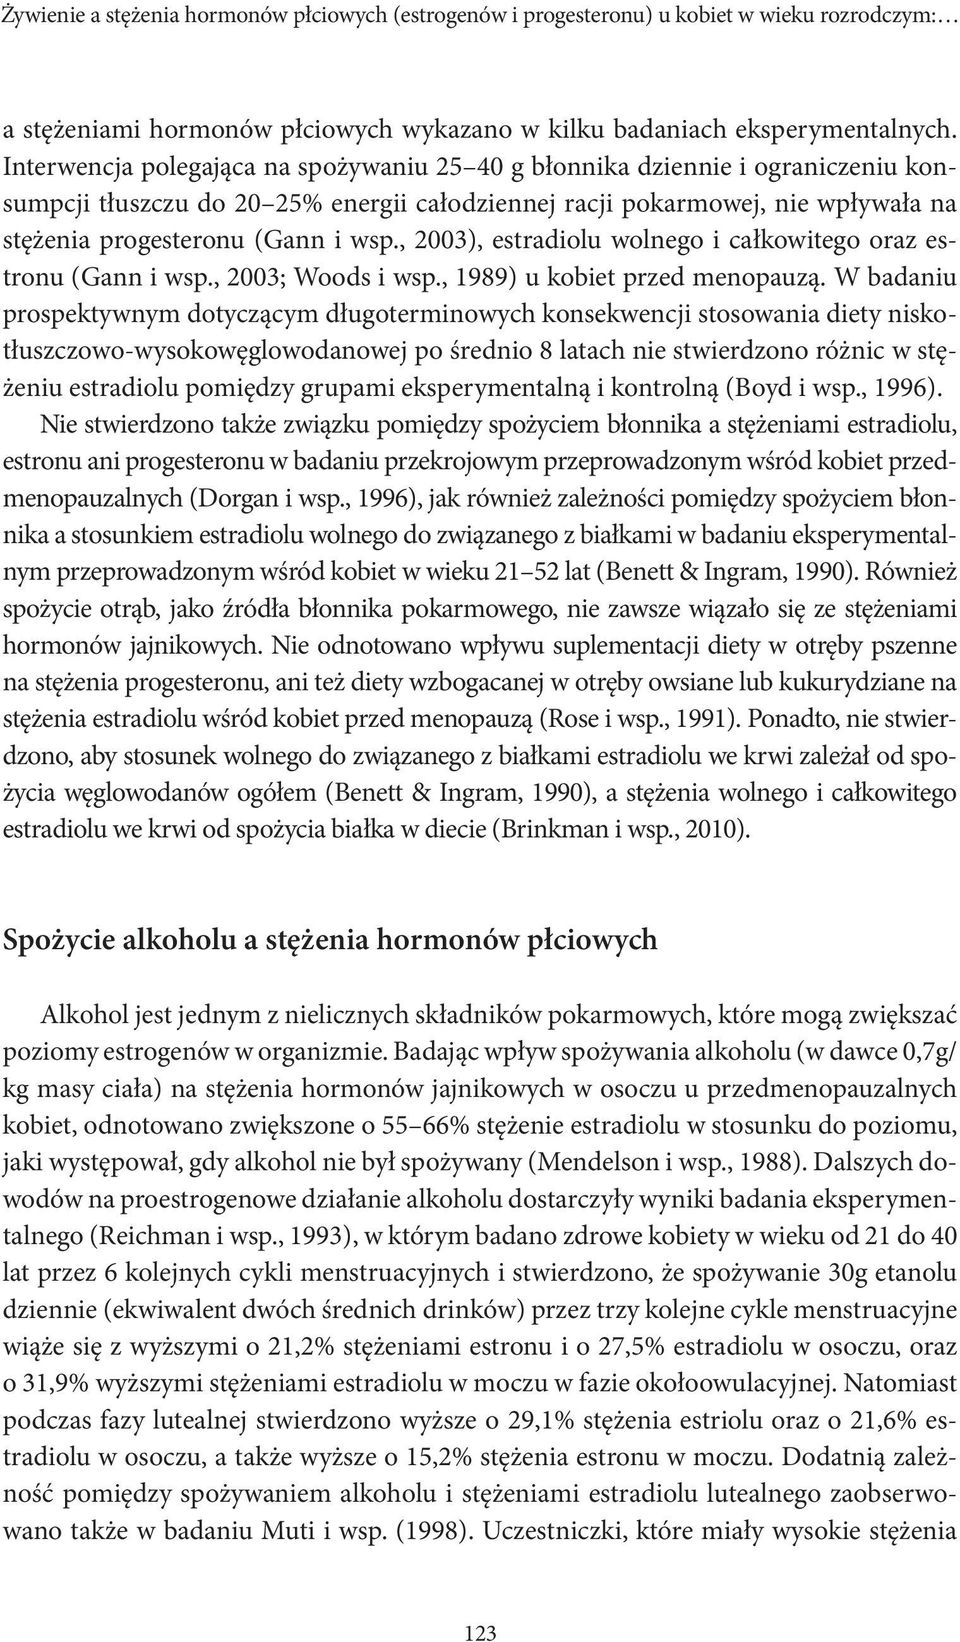 , 2003), estradiolu wolnego i całkowitego oraz estronu (Gann i wsp., 2003; Woods i wsp., 1989) u kobiet przed menopauzą.